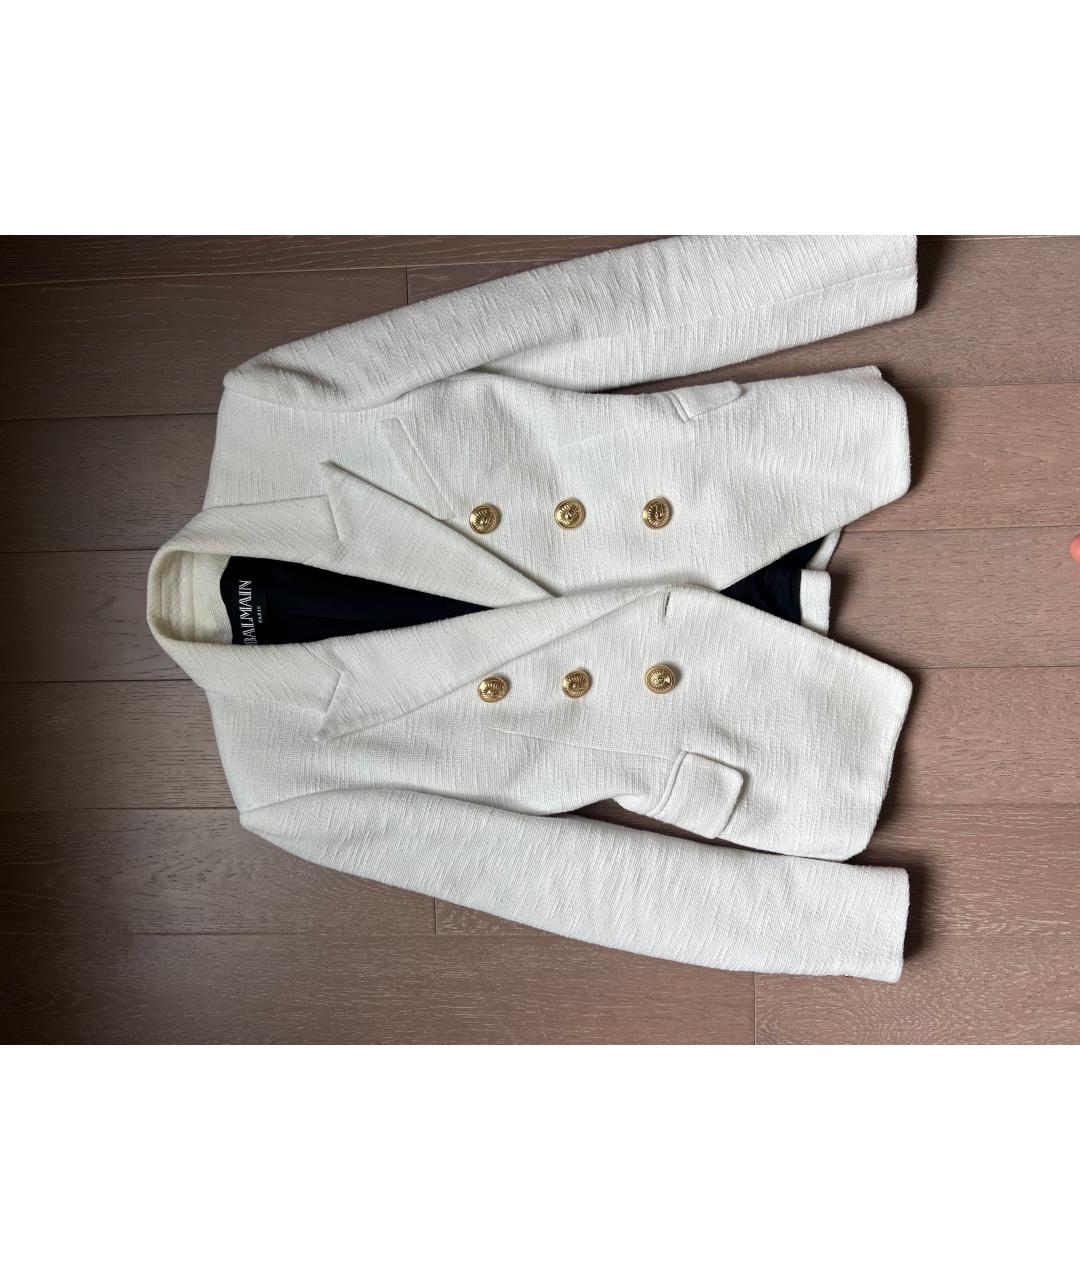 BALMAIN Белый хлопковый жакет/пиджак, фото 3